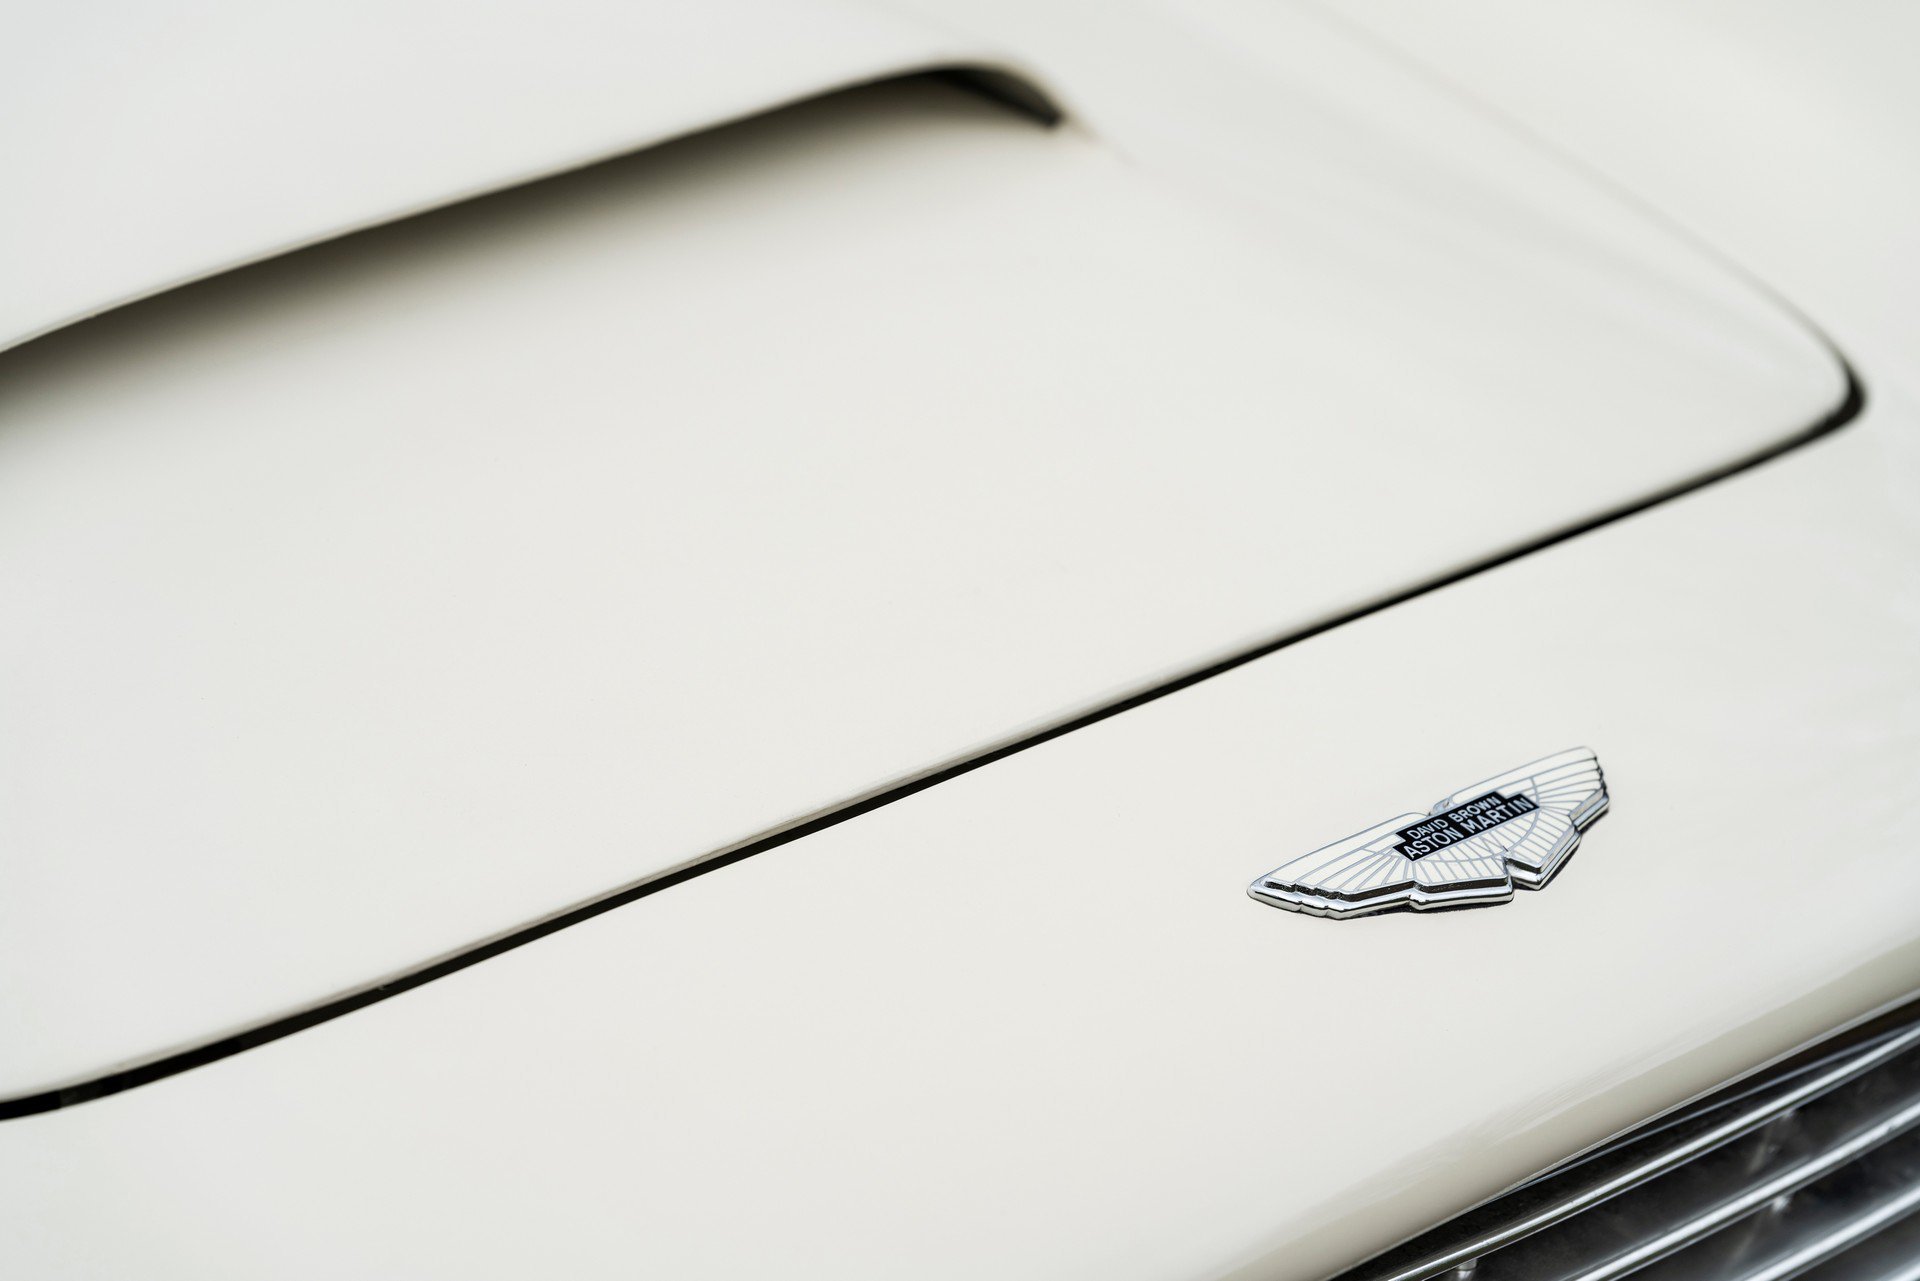 Pod kapotou unikátního konceptu postaveného na základech Aston Martin DB6 se ukrývá první reverzibilní elektrický pohon pro klasické vozy této značky